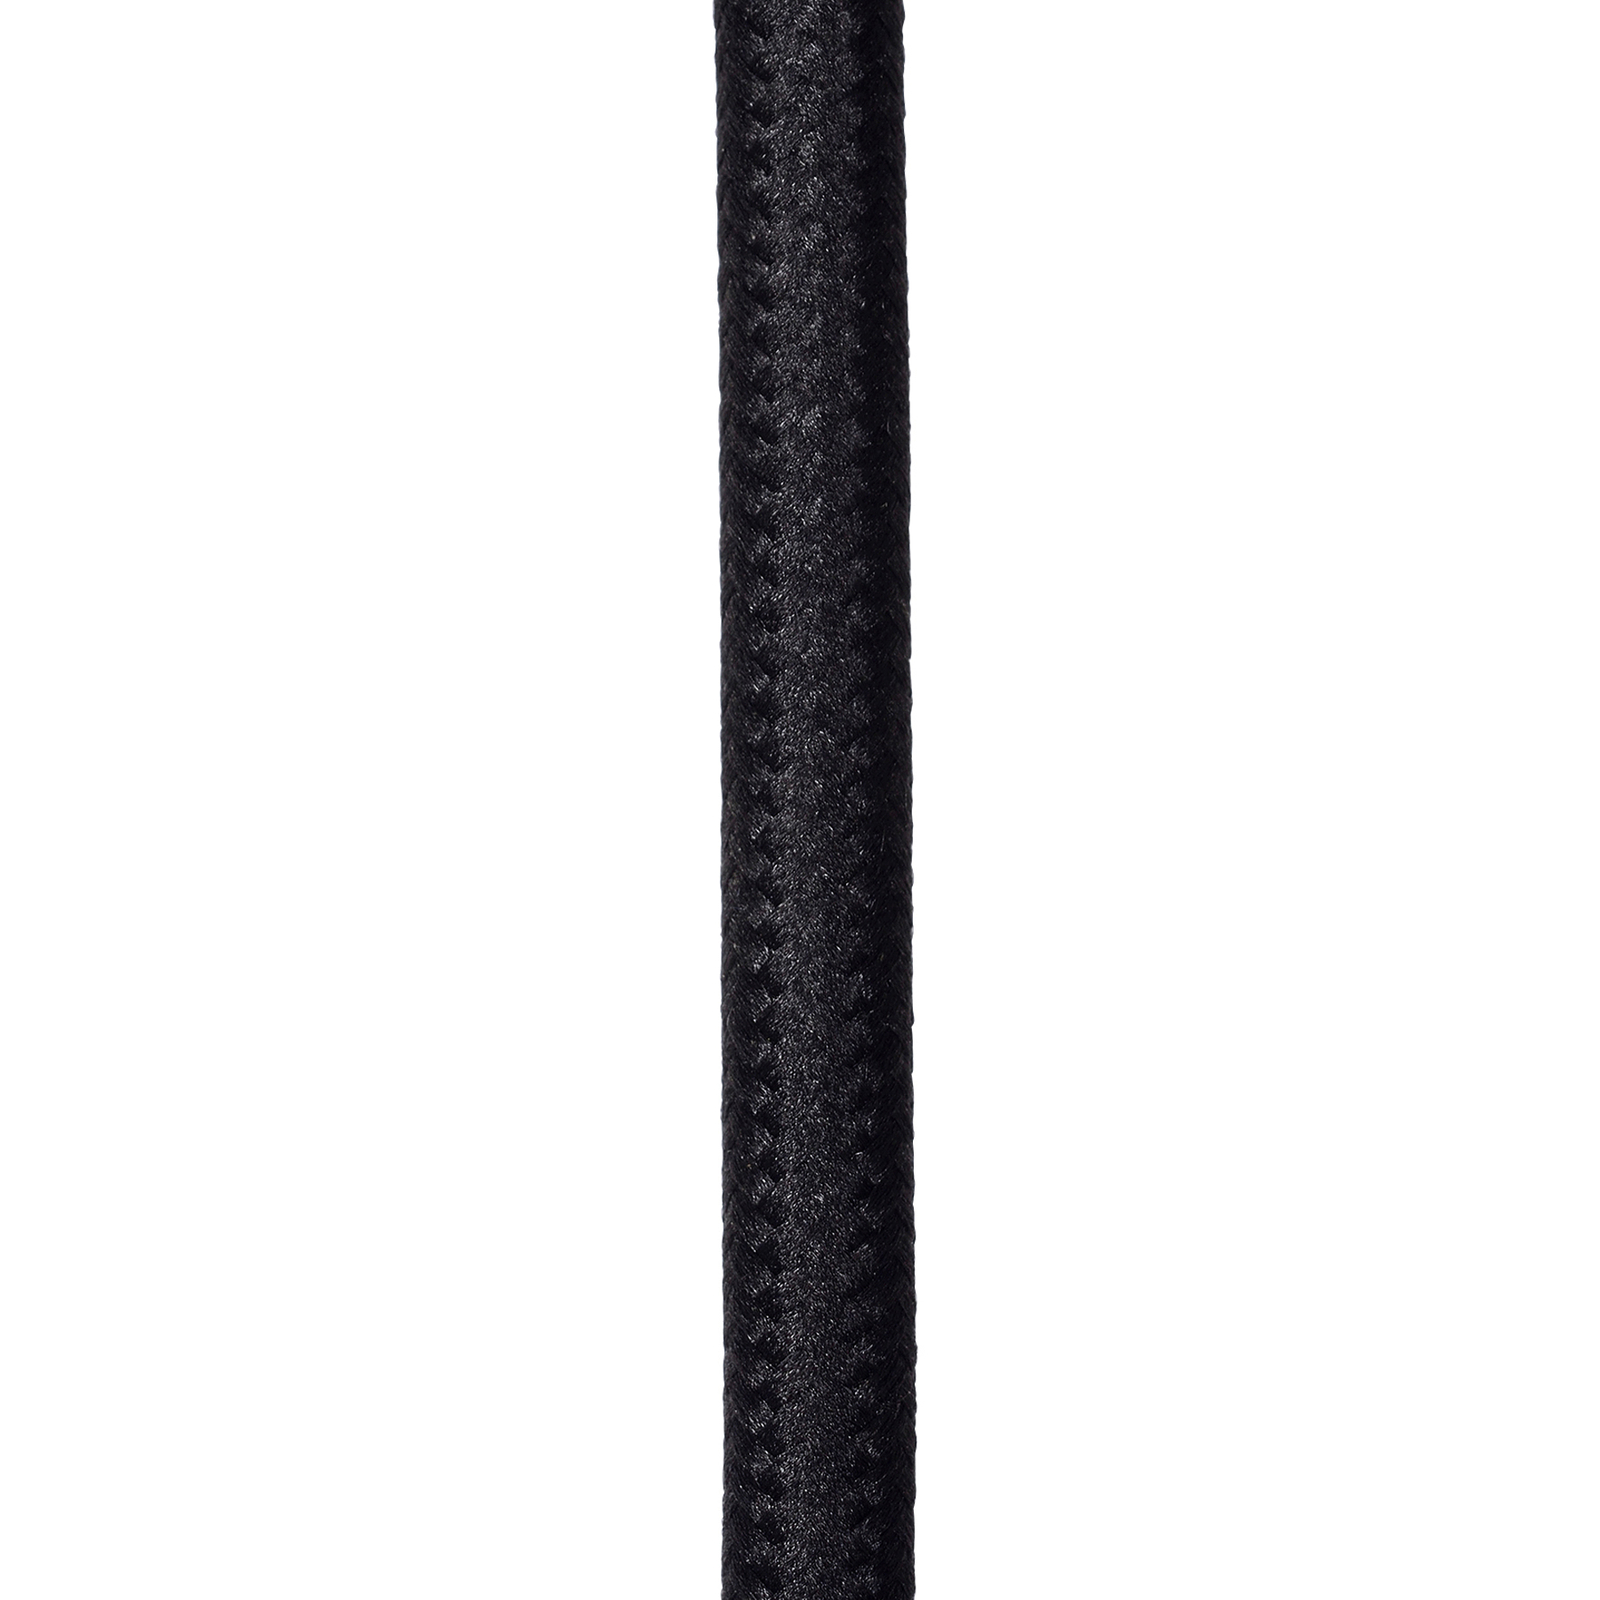 Riippuvalaisin Mesh, puolisuunnikkaan muotoinen, Ø 45 cm, musta